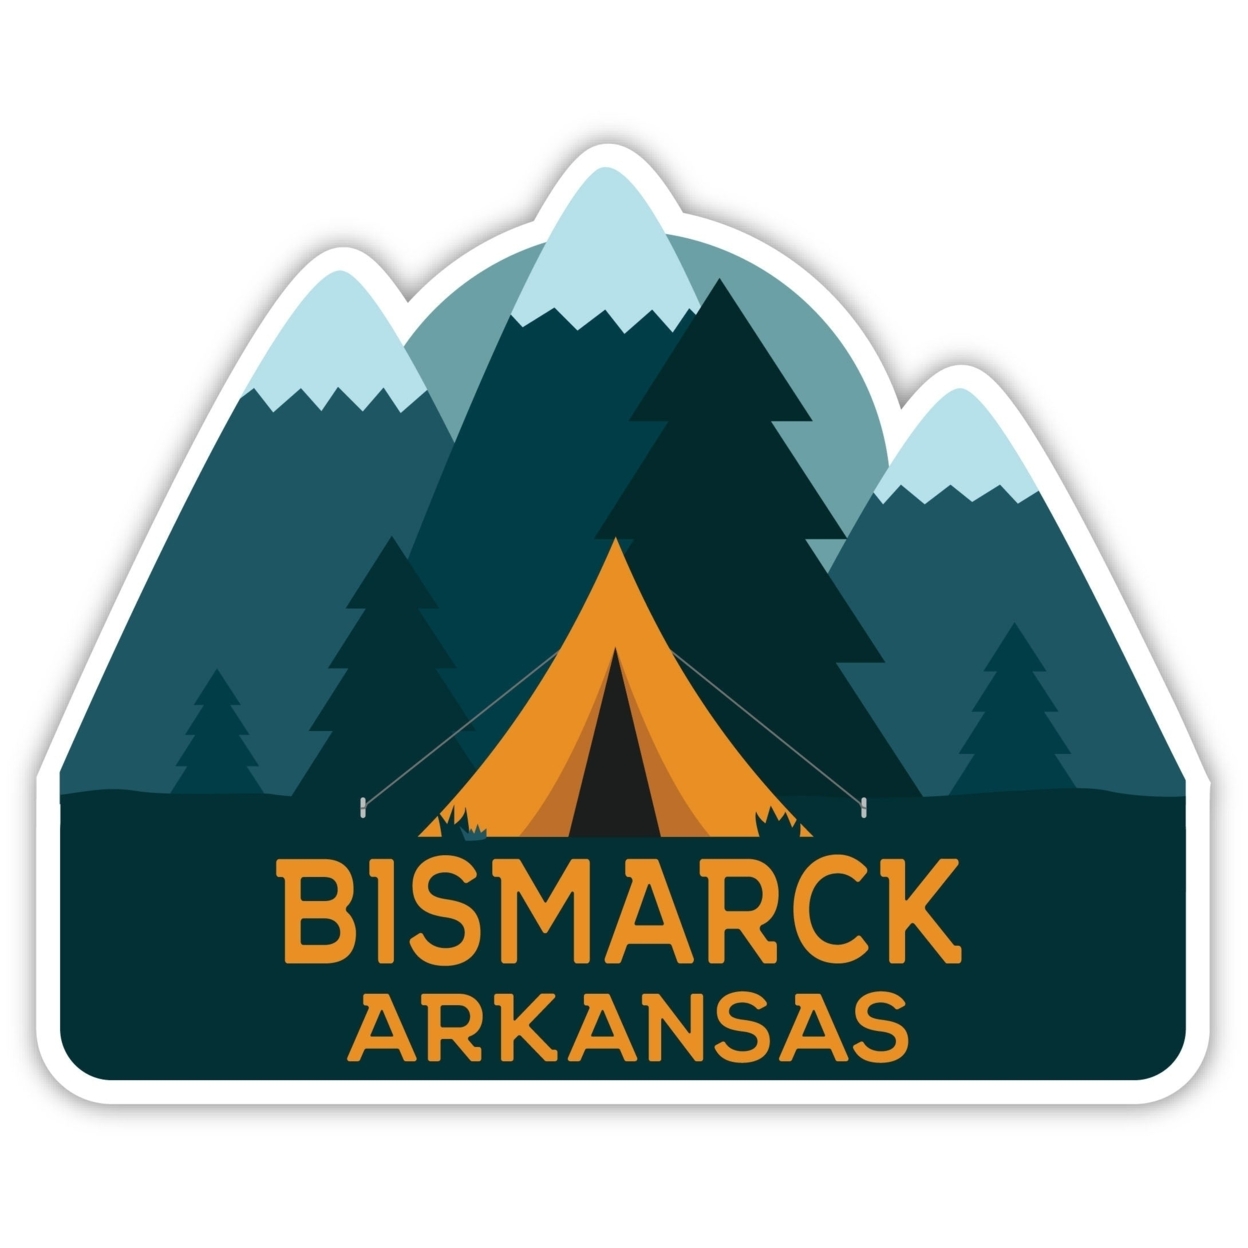 Bismarck Arkansas Souvenir Decorative Stickers (Choose Theme And Size) - Single Unit, 6-Inch, Tent